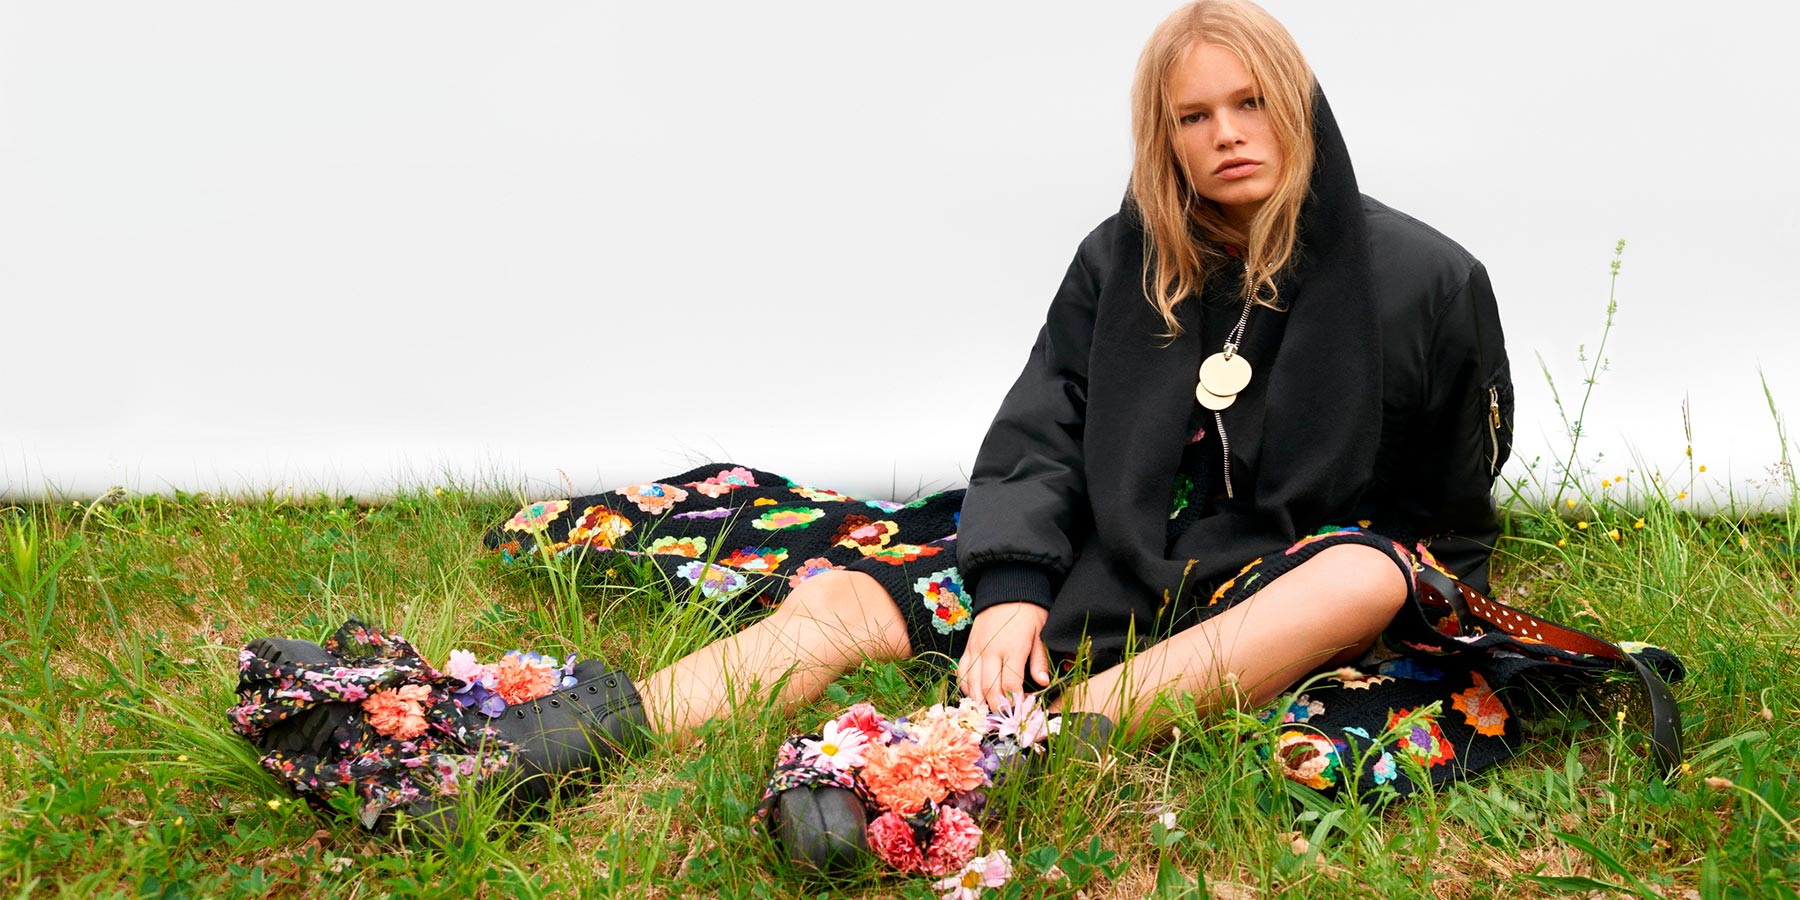 Adolescente com roupas pretas sentada na grama no estilo emo